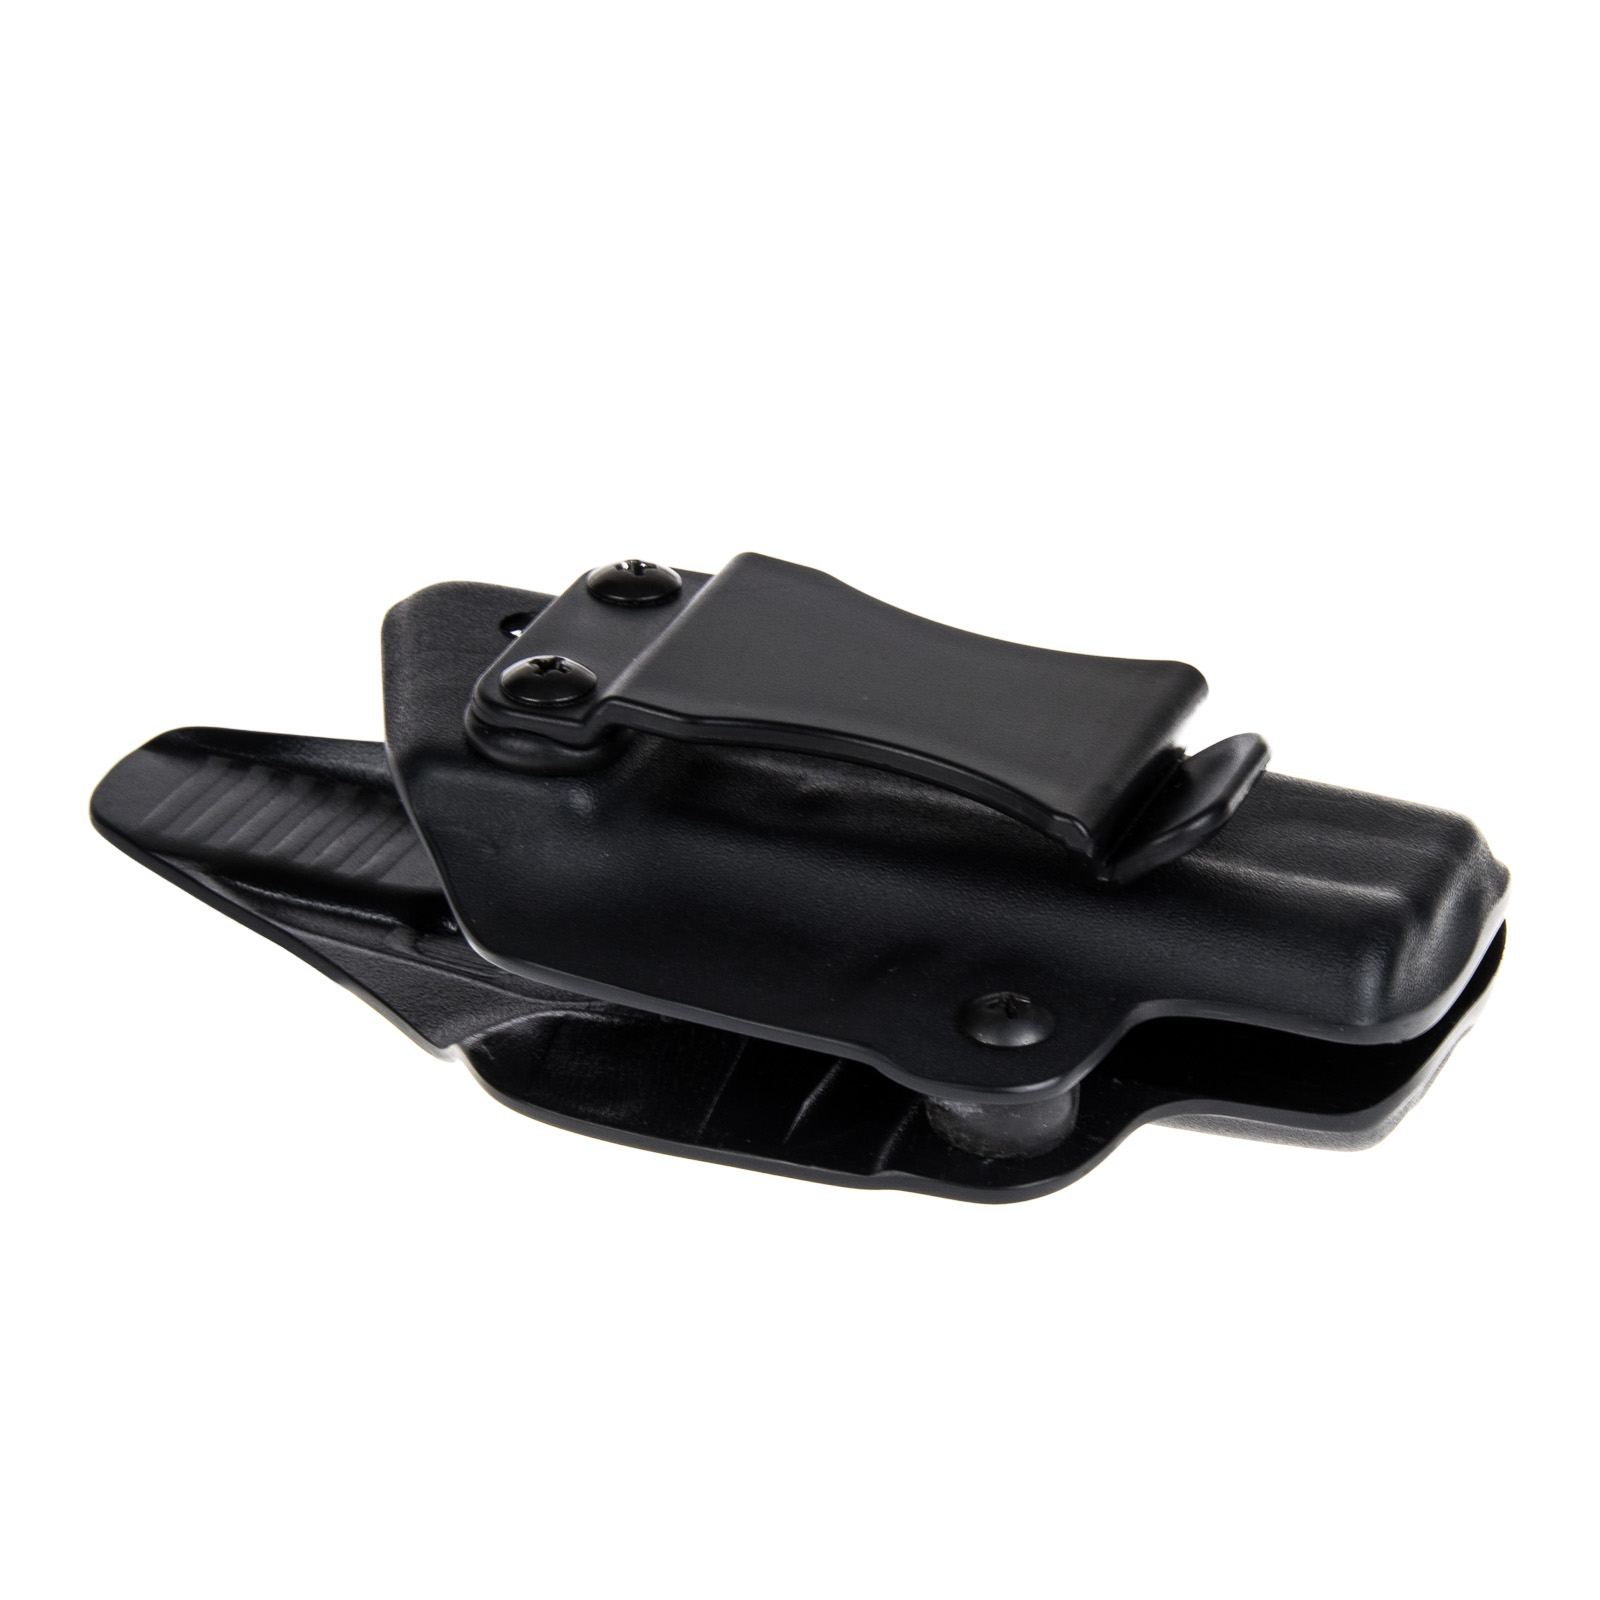 Vnitřní pouzdro RHholster, plný sweatguard, černá/černá (Glock 19/23/32)